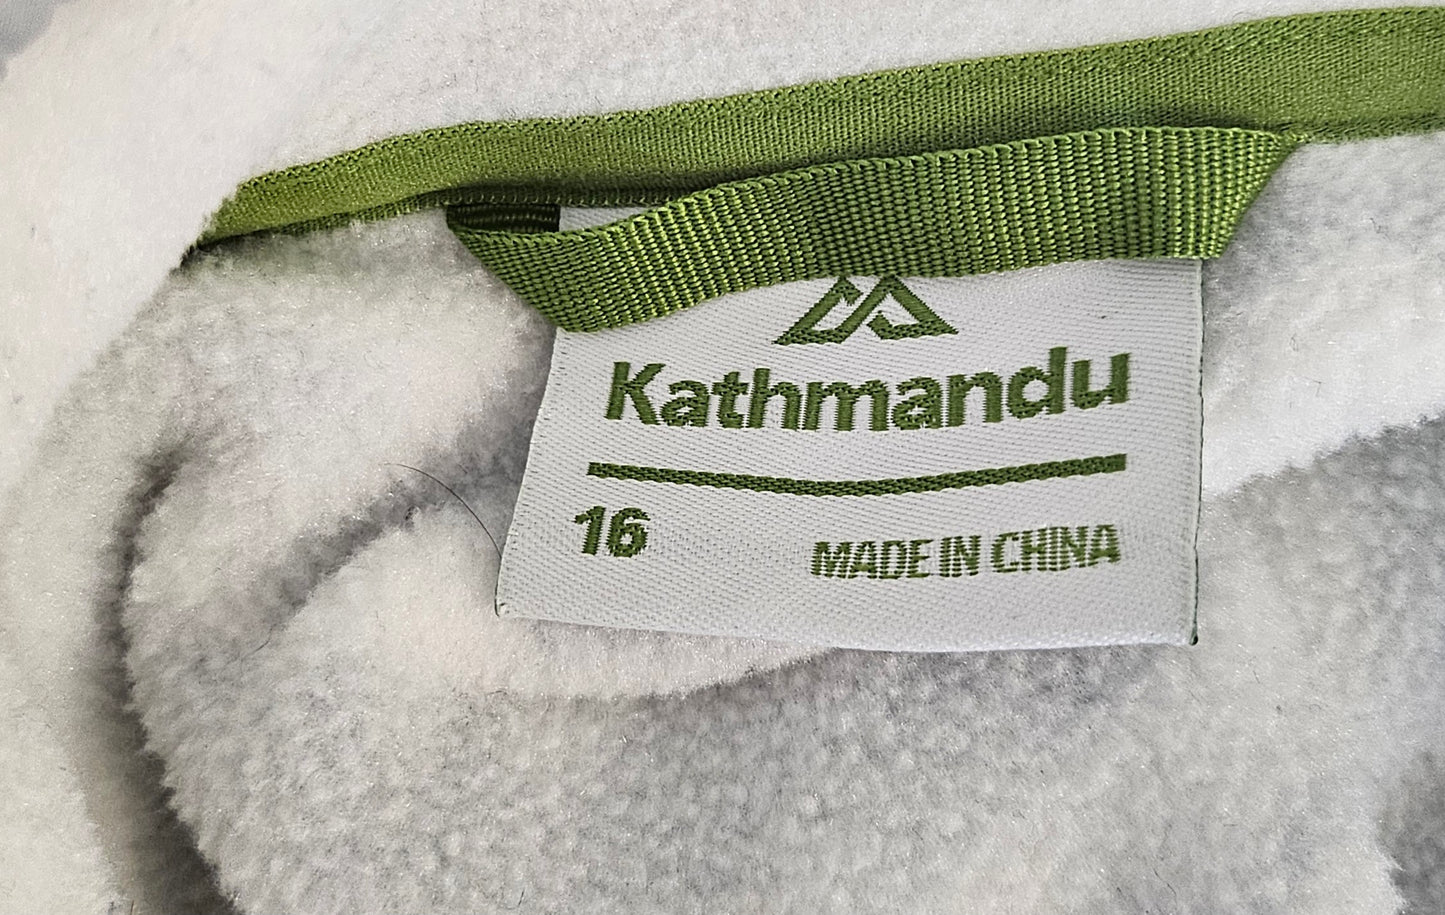 Kathmandu Pattern Fleece Top (16)